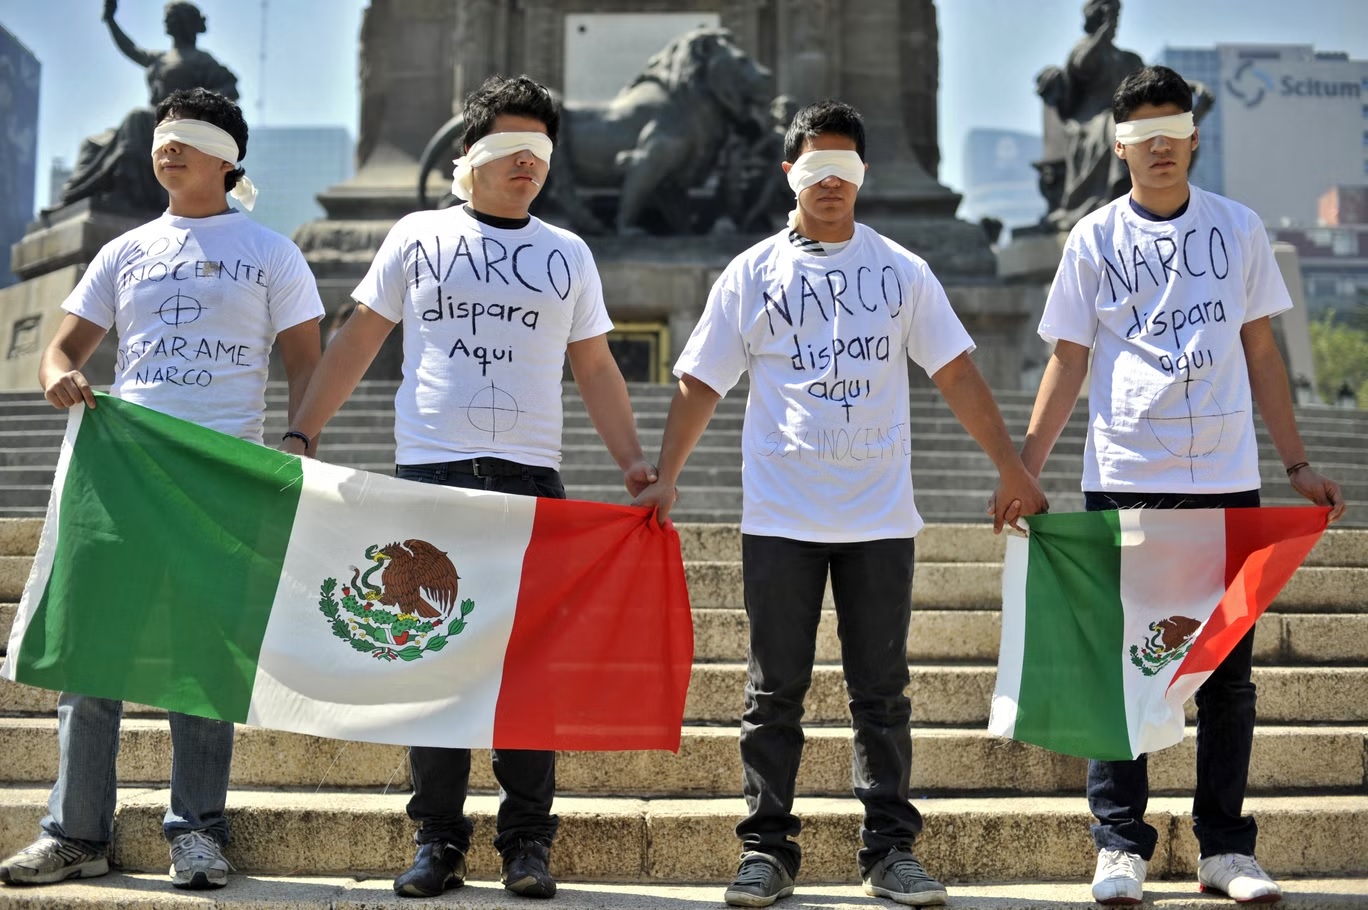 أعضاء منظمة اجتماعية يحملون الأعلام المكسيكية الوطنية أثناء احتجاجهم على عنف عصابات المخدرات في سيوداد خواريز (أ ف ب/غيتي)